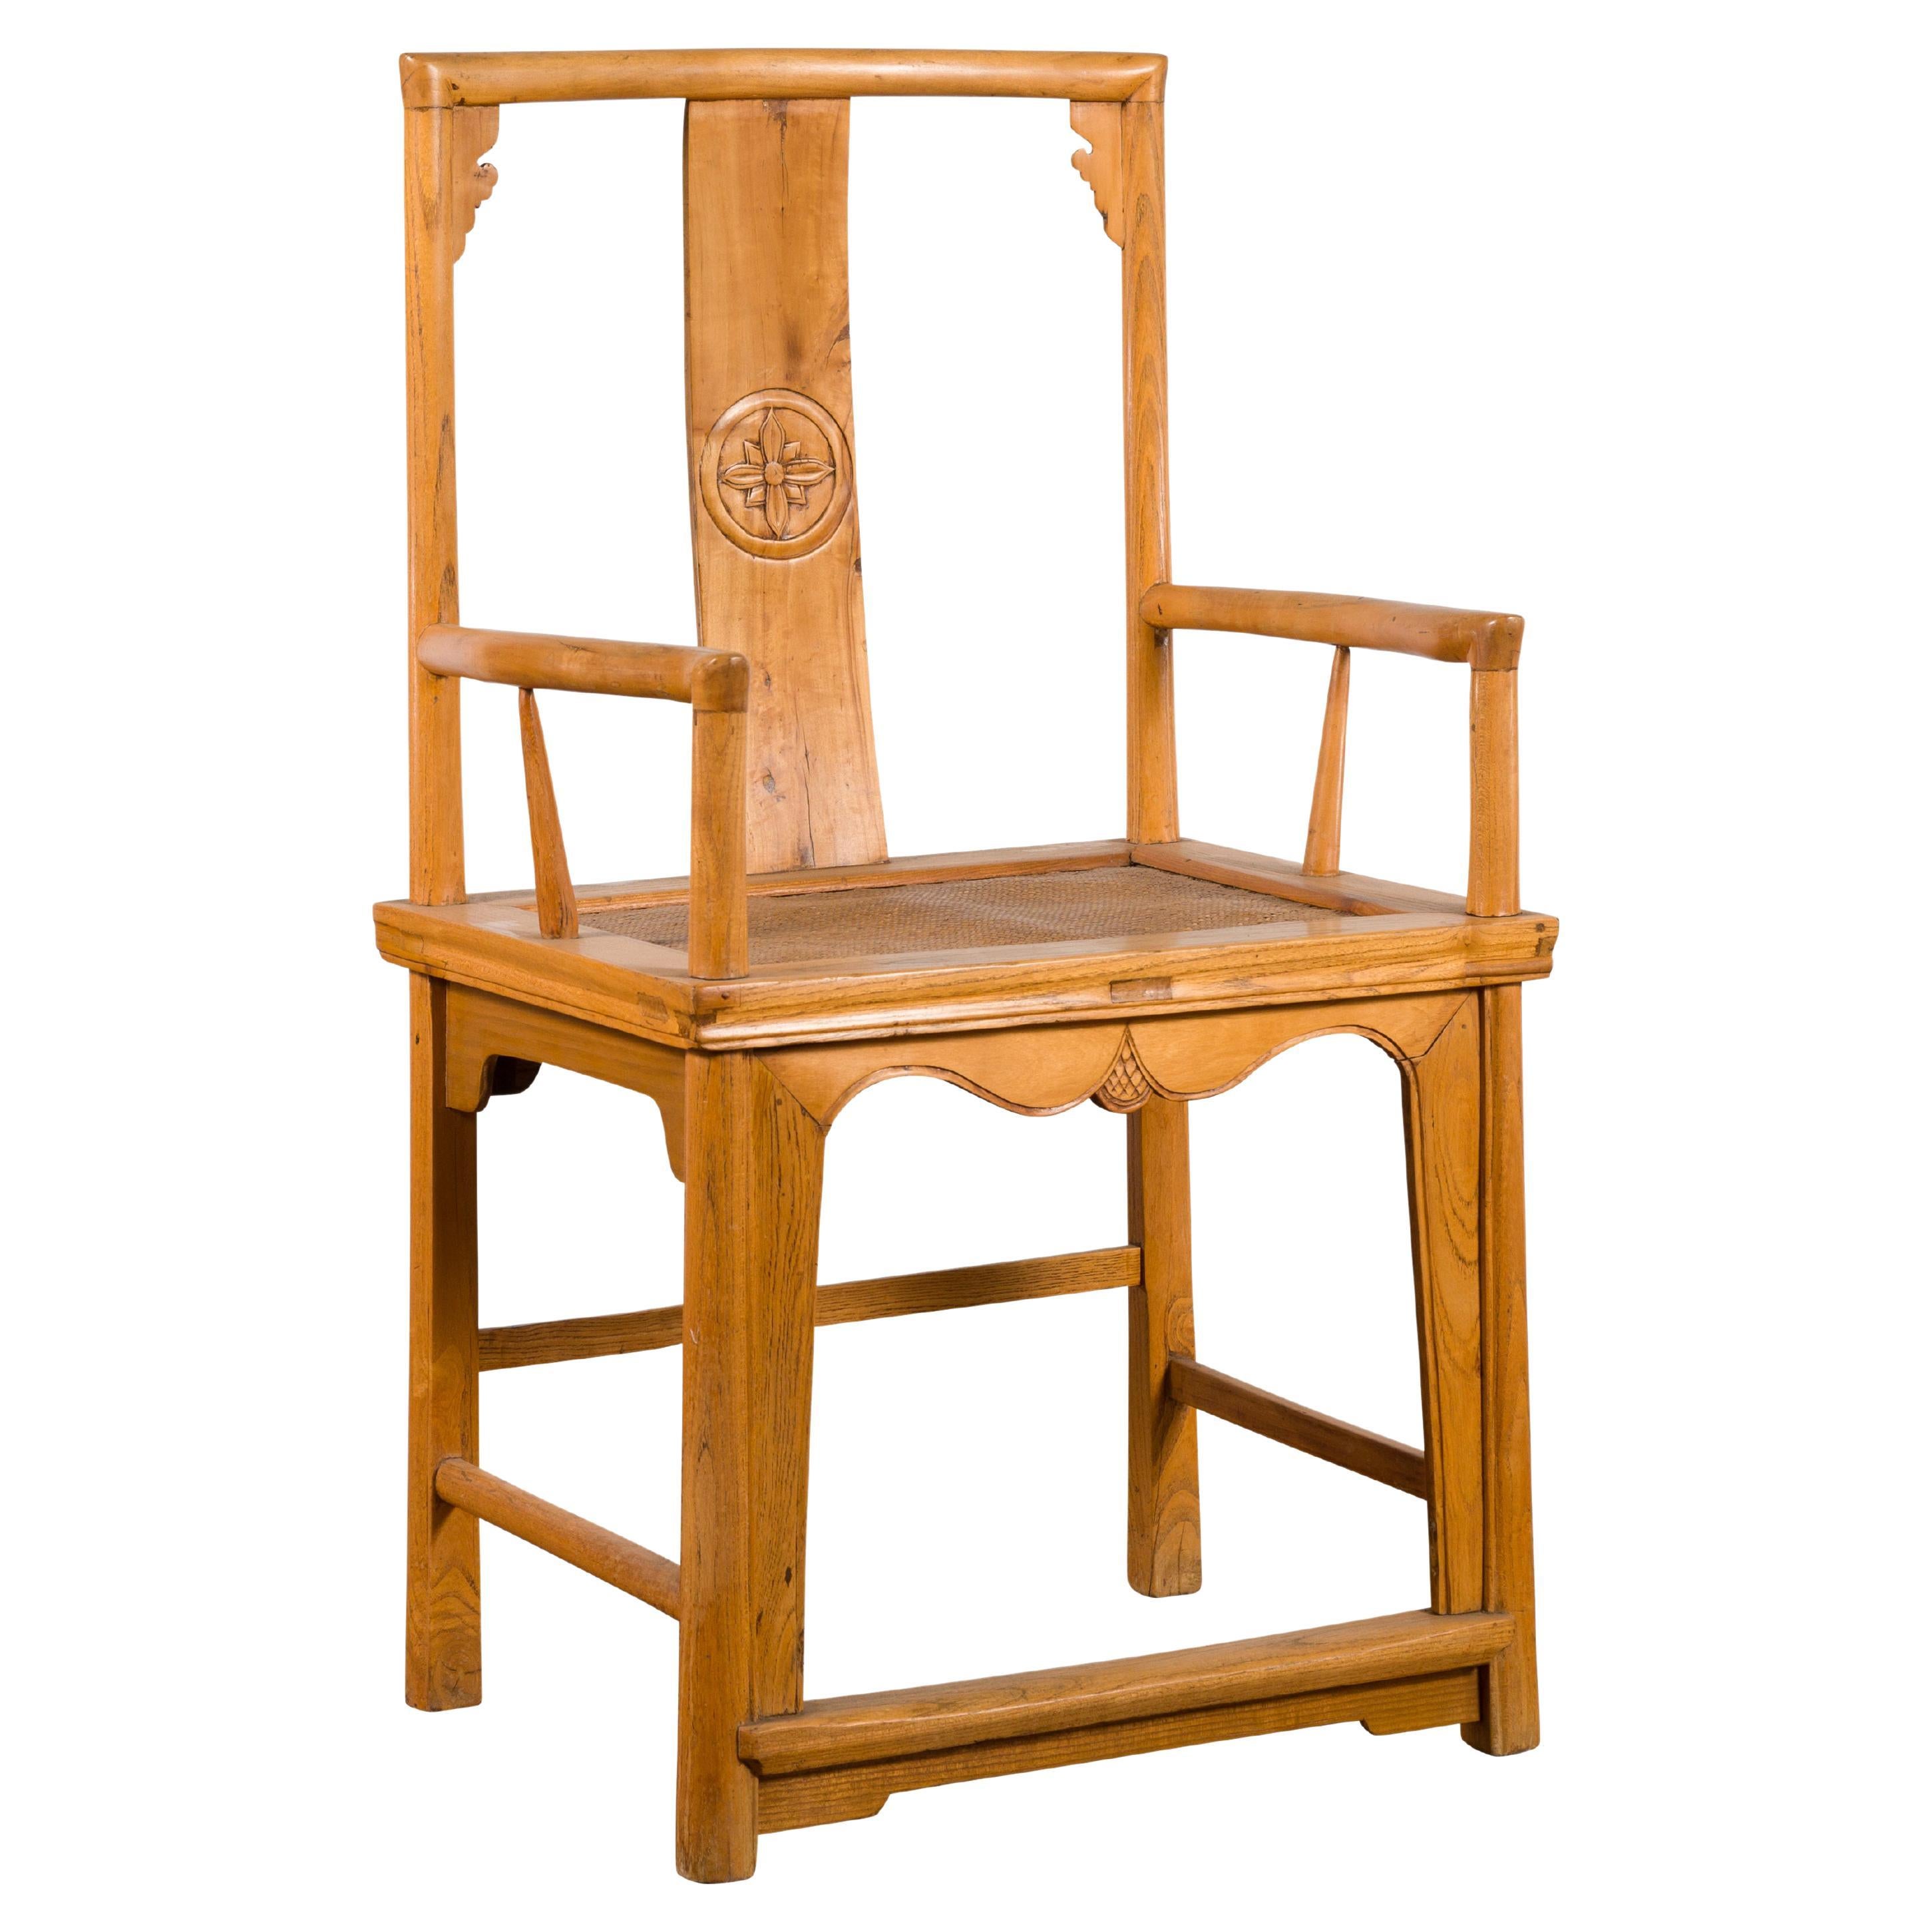 Chinesischer Sessel des frühen 20. Jahrhunderts mit handgeschnitztem Medaillon und Sitz aus Rattan